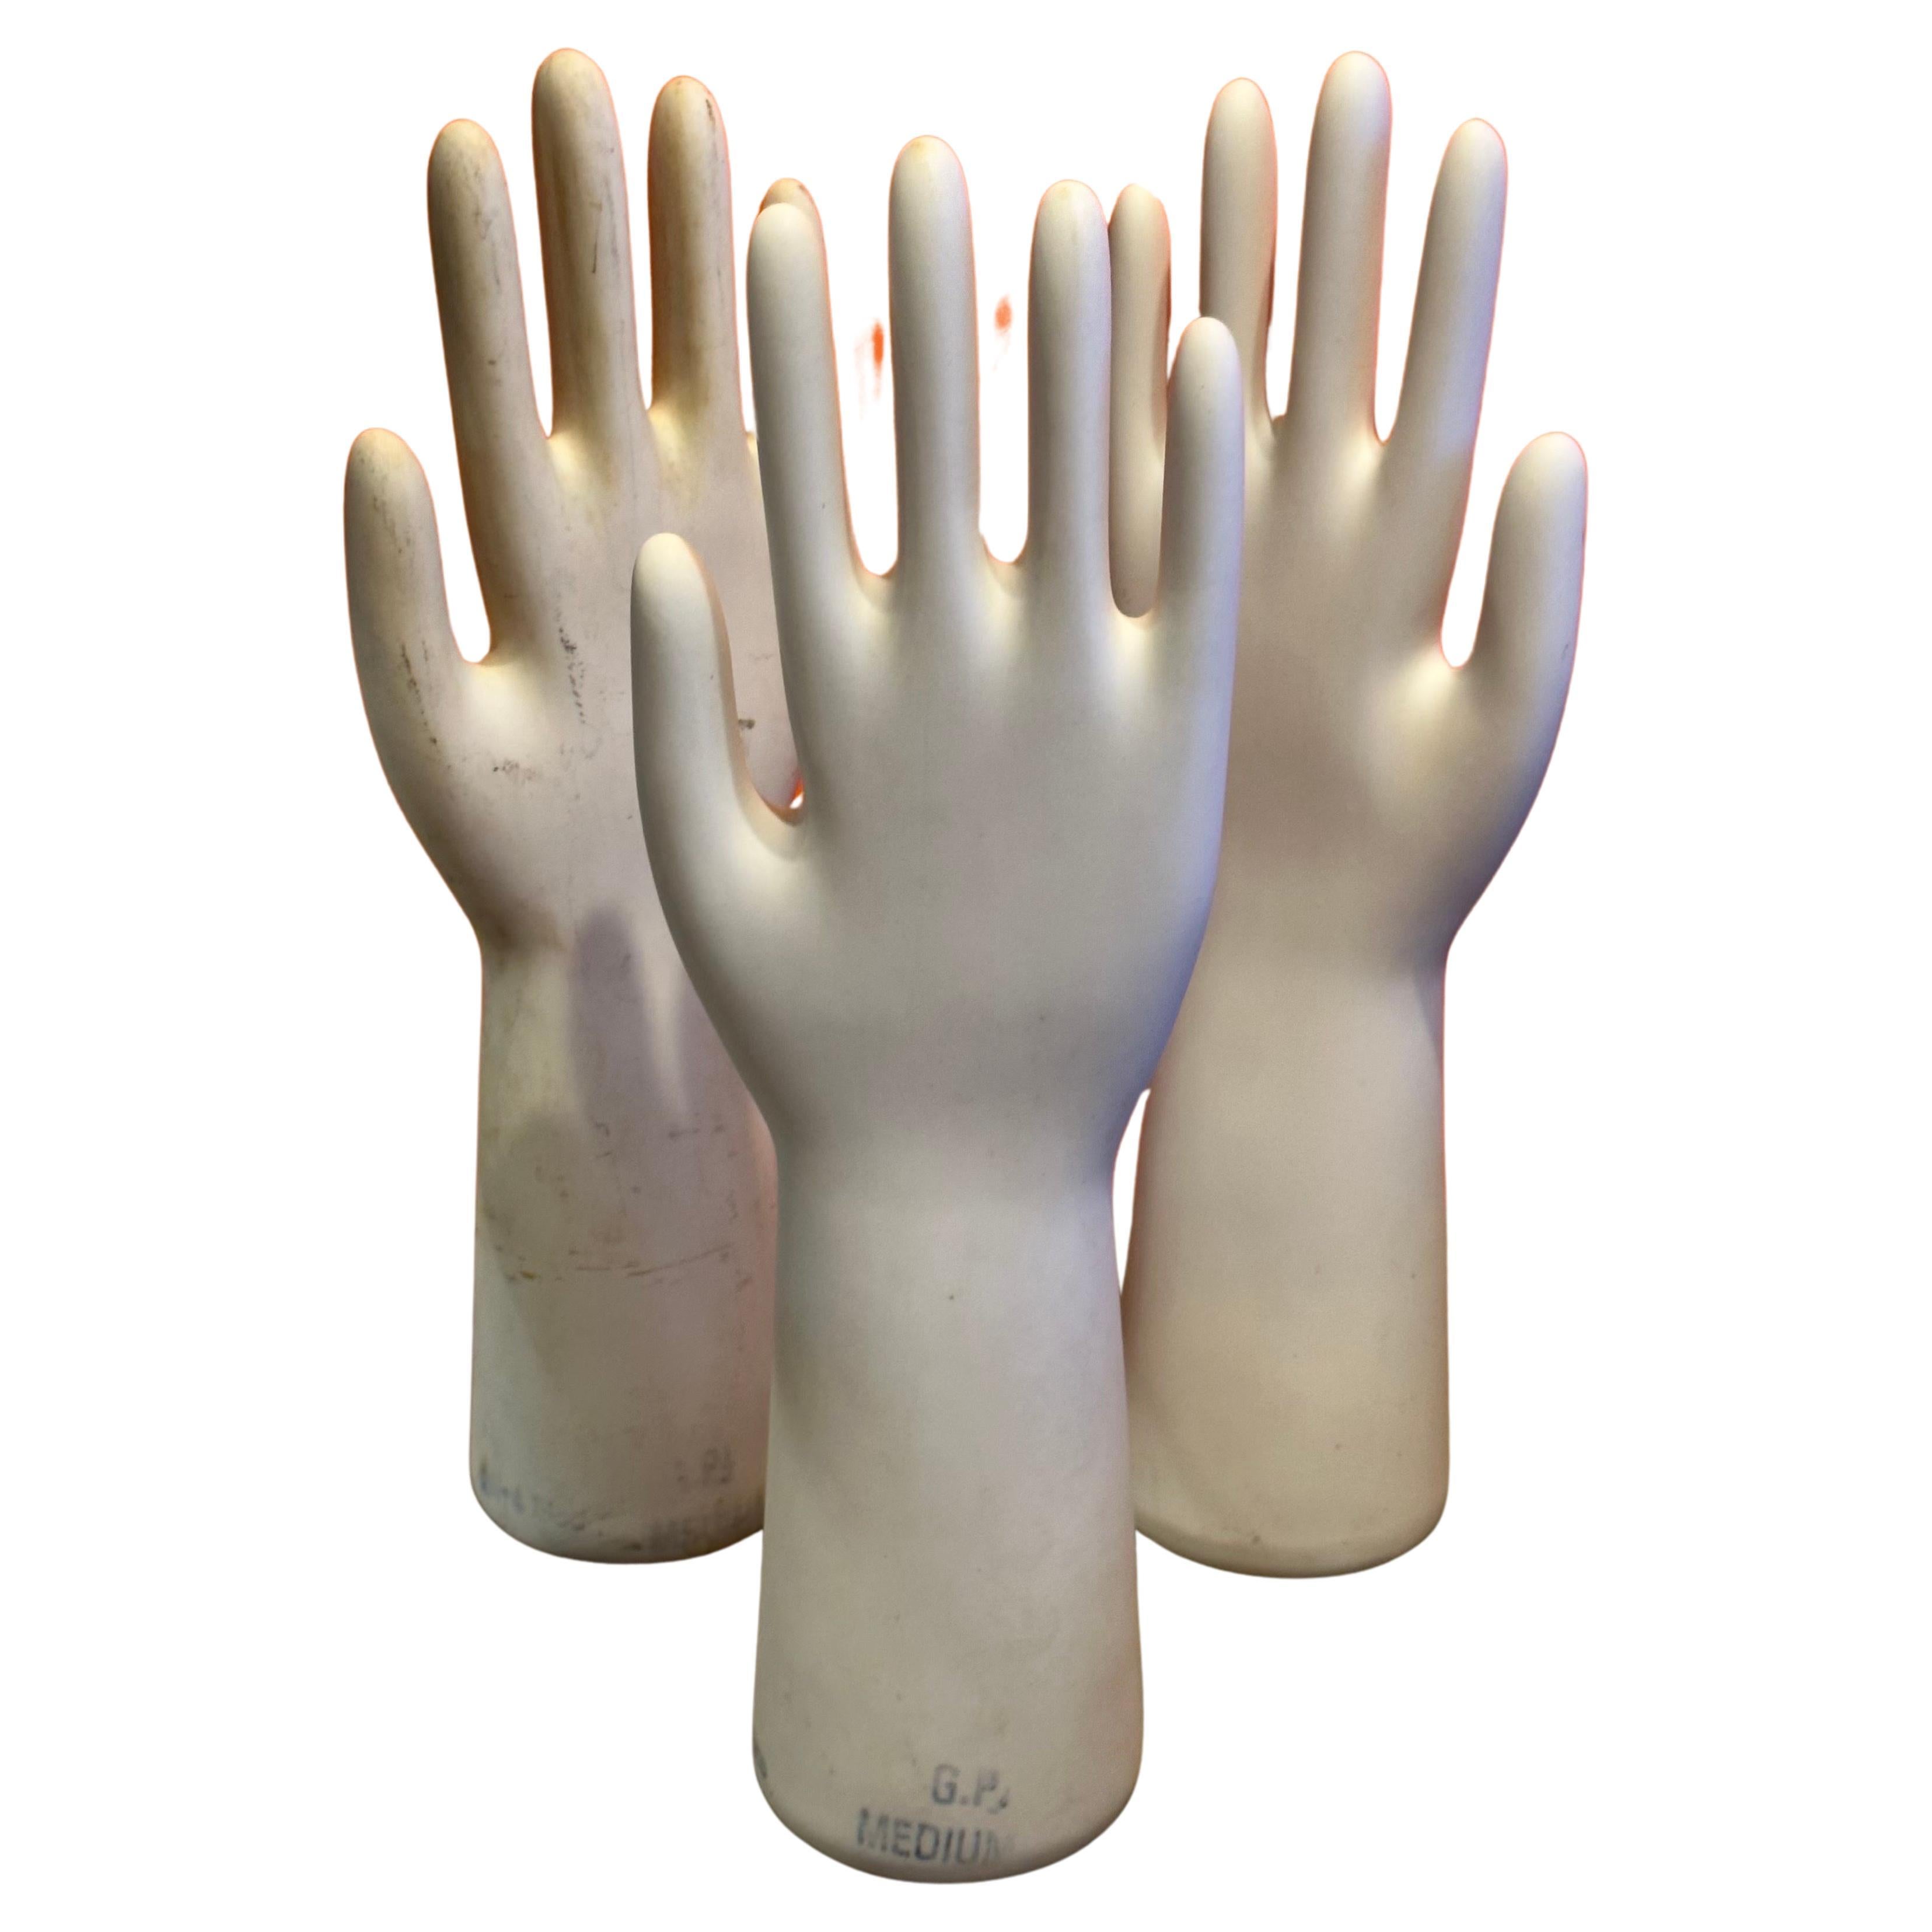 Ensemble de trois moules à gants en porcelaine industrielle vintage, vers les années 1980.  Les moules ont une belle apparence et constituent une merveilleuse sculpture moderne.  Ils sont en très bon état, sans éclats ni fissures, et mesurent 4,5 